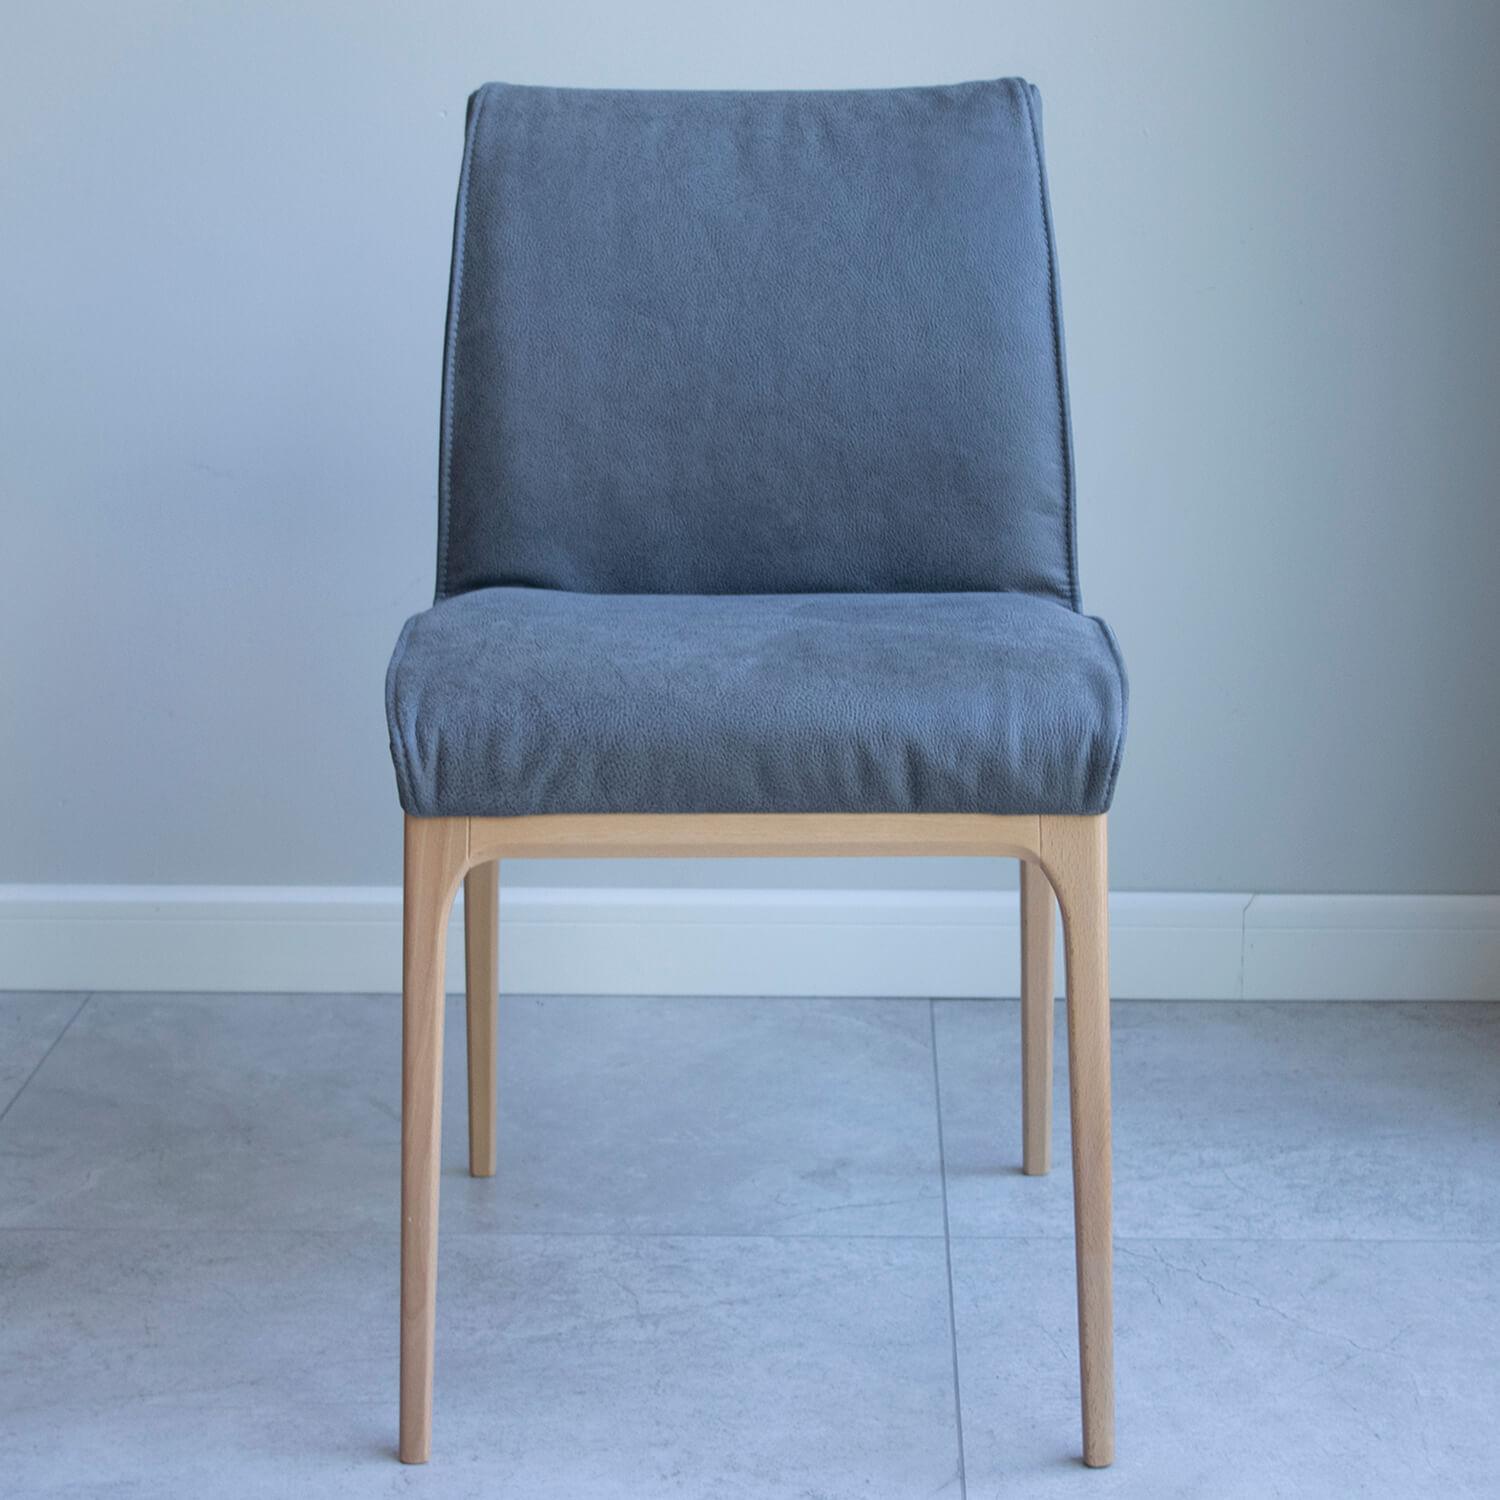 Nowczesne krzesło tapicerowane, szare, na drewnianych nogach, krzesło do salonu-jadalni